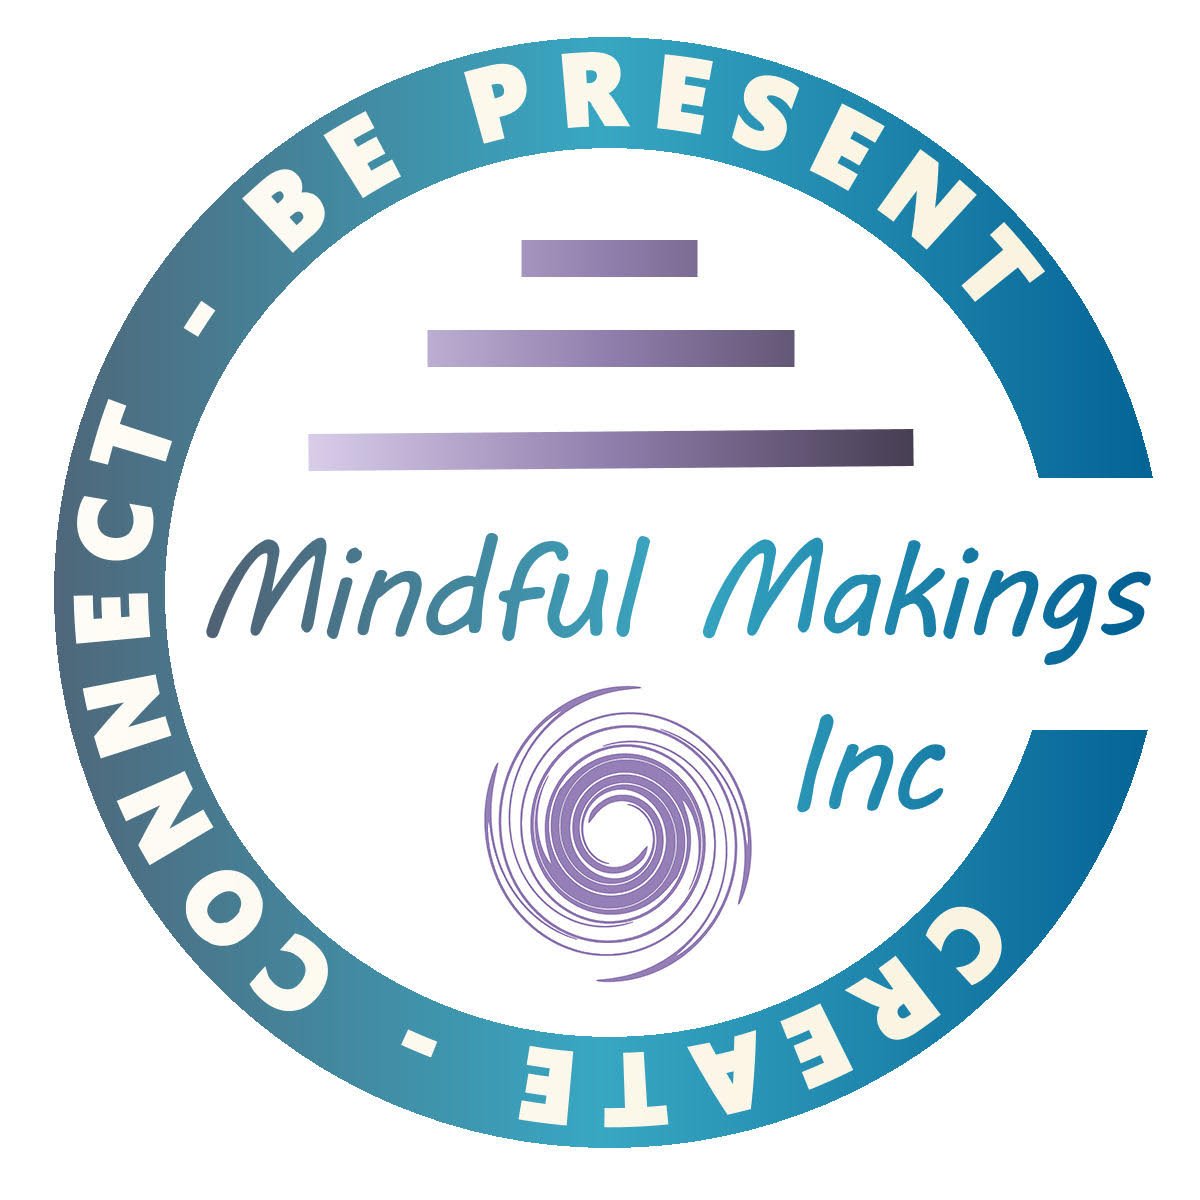 Mindful Makings Inc.jpg